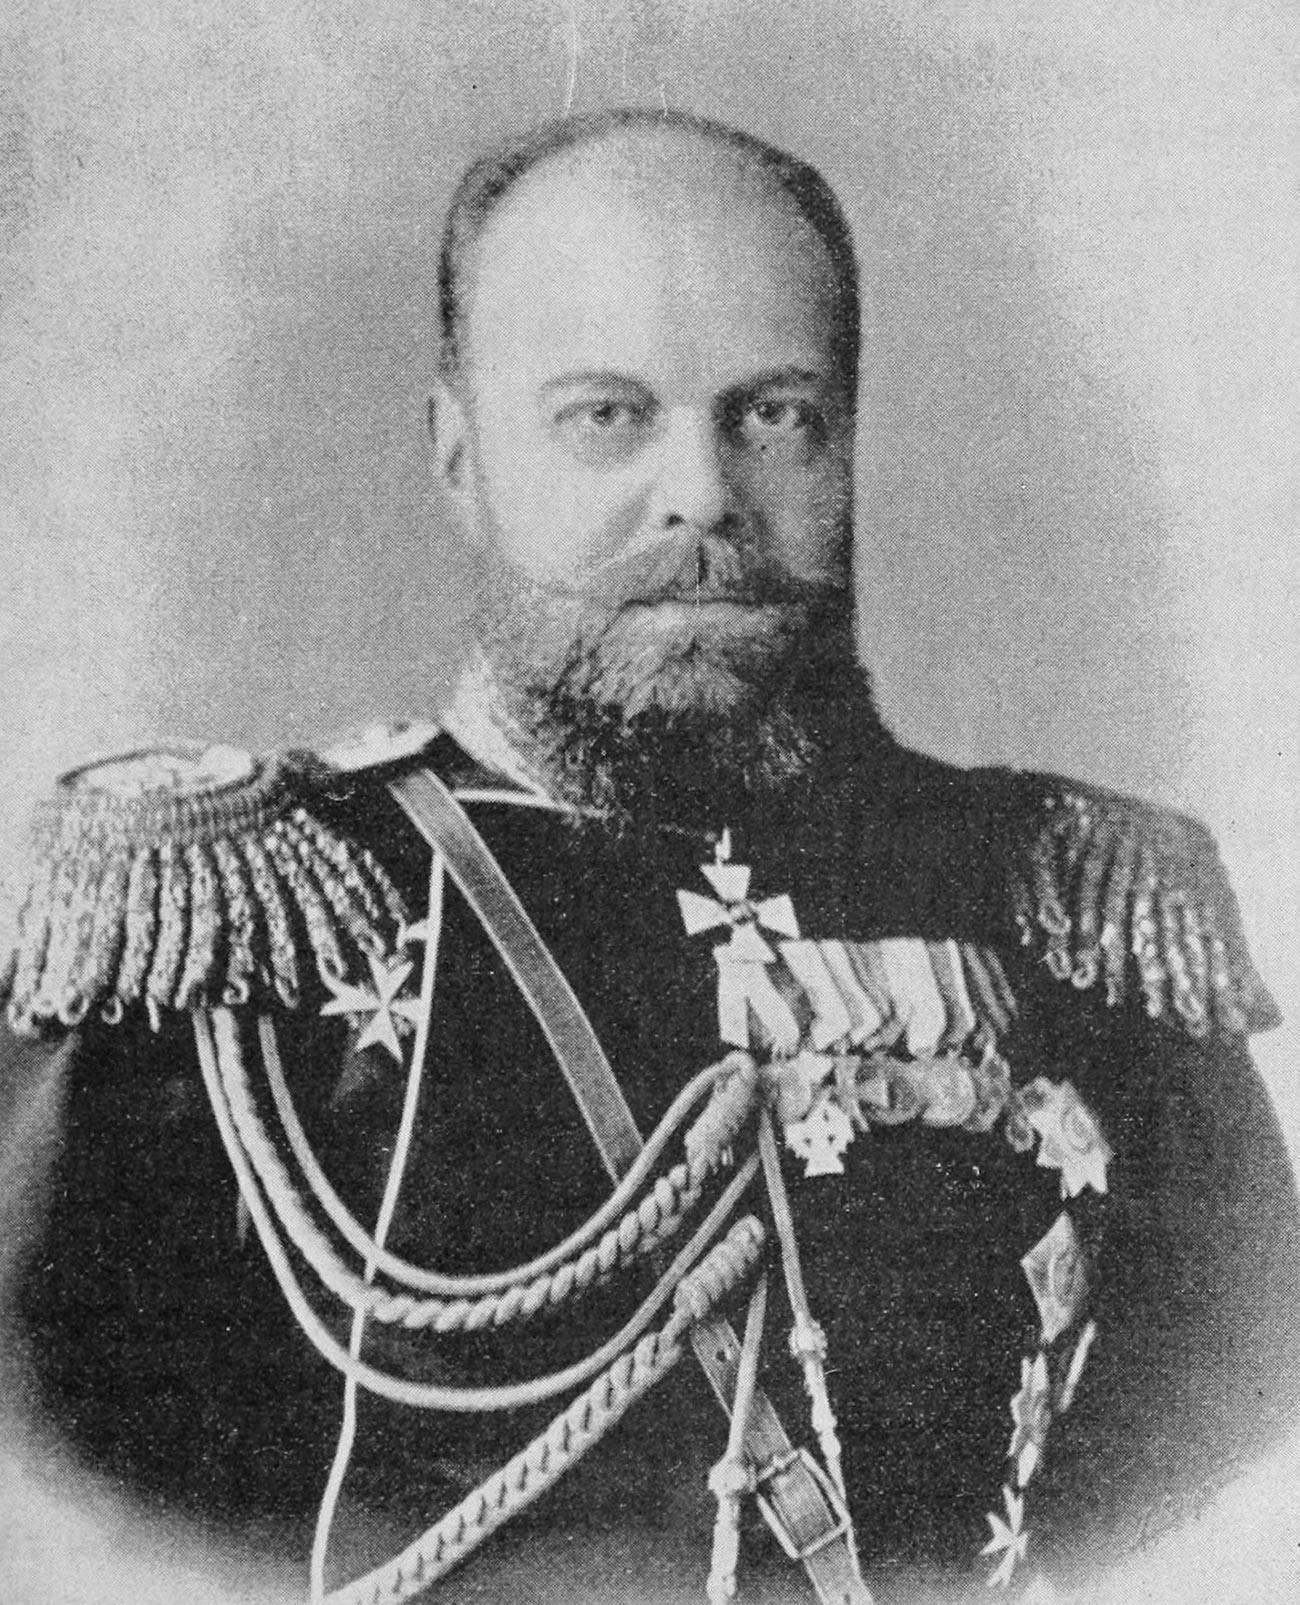 Der Zar von Russland (Alexander III).